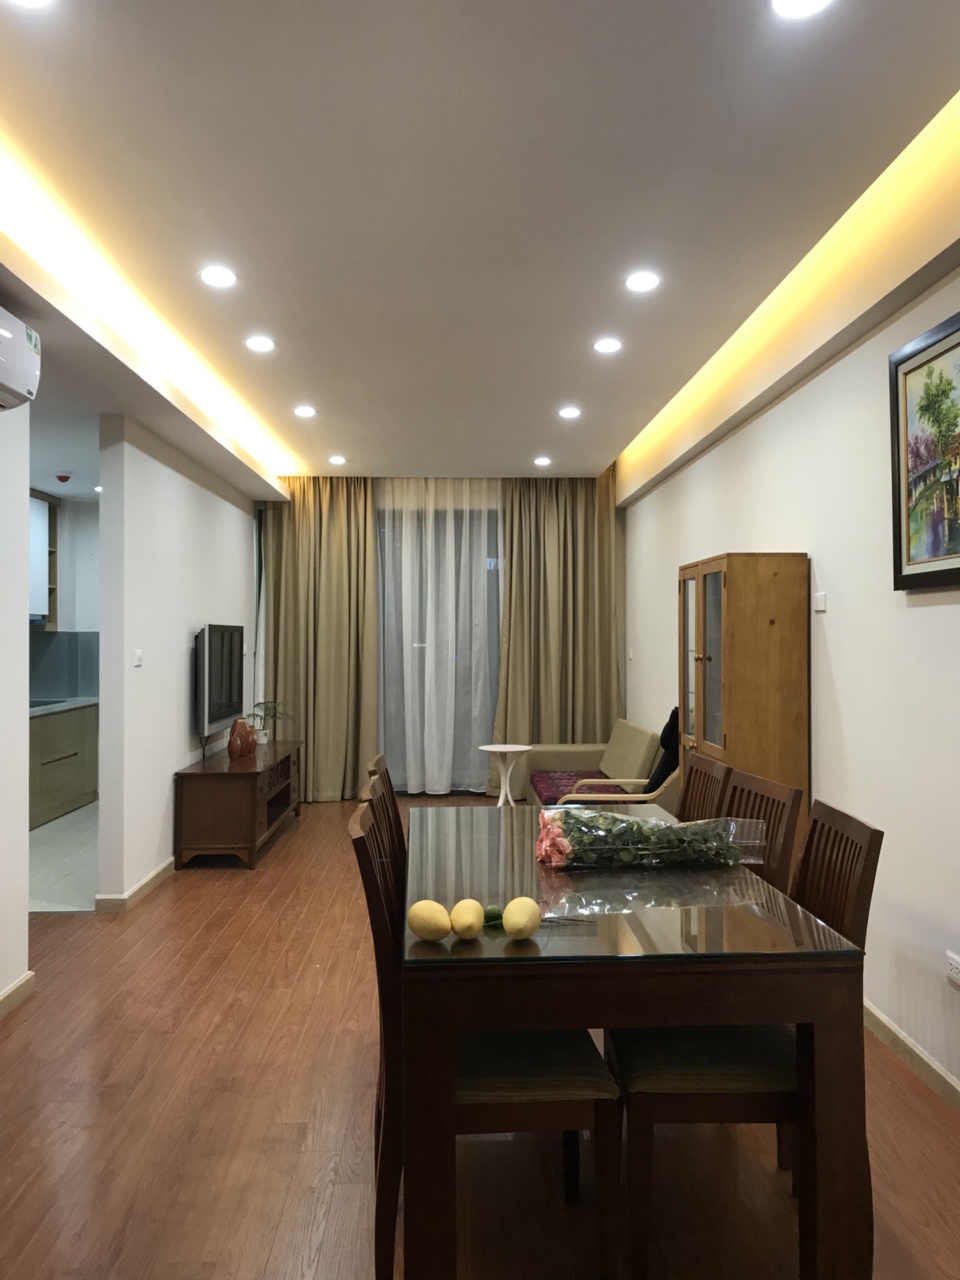 Cho thuê căn hộ chung cư 102 Thái Thịnh, 72m2, 2 phòng ngủ, nội thất cơ bản, giá 8,5 triệu/th LH 016 3339 8686 Vào Ngay 838936